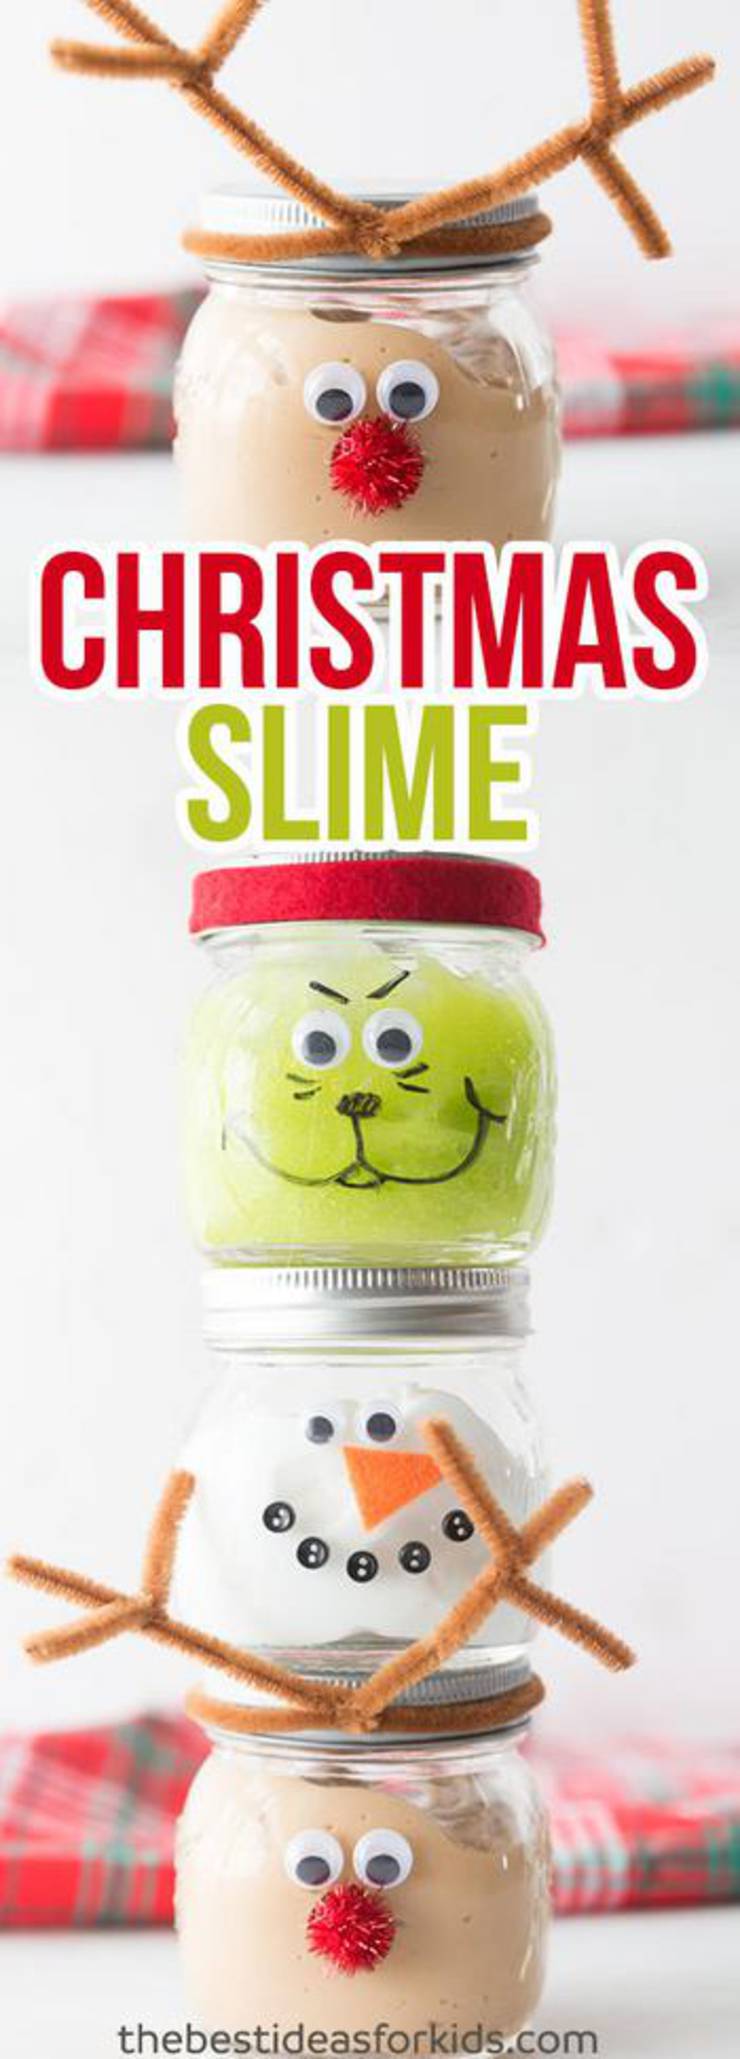 Diy Christmas Slime Jars - Christmas Slime! How To Make DIY Christmas Slime - Easy Homemade Recipes